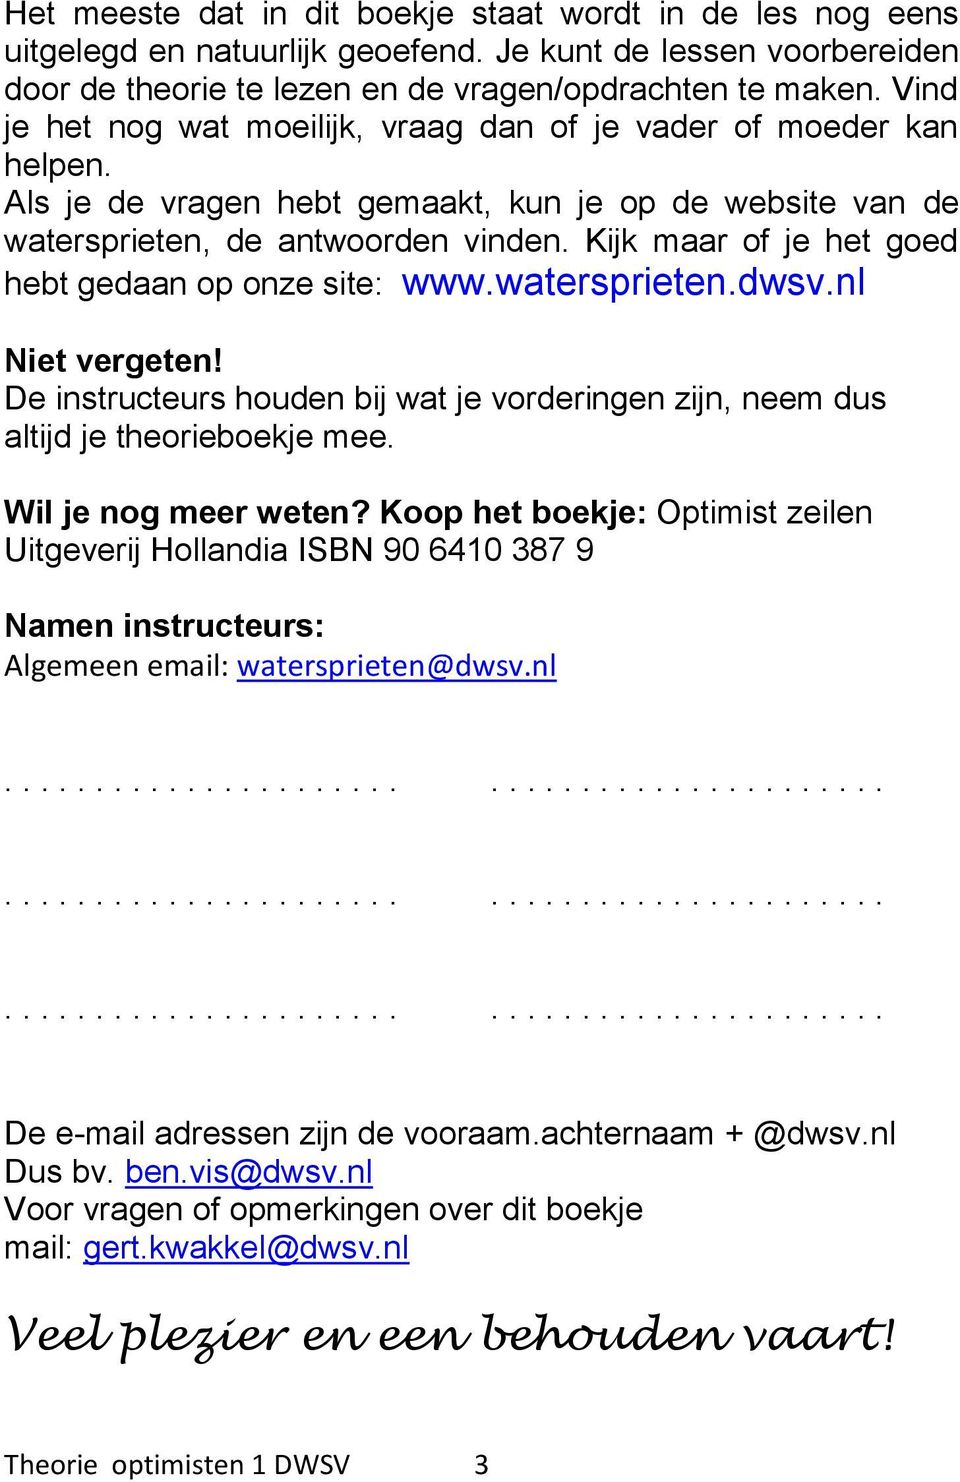 Kijk maar of je het goed hebt gedaan op onze site: www.watersprieten.dwsv.nl Niet vergeten! De instructeurs houden bij wat je vorderingen zijn, neem dus altijd je theorieboekje mee.